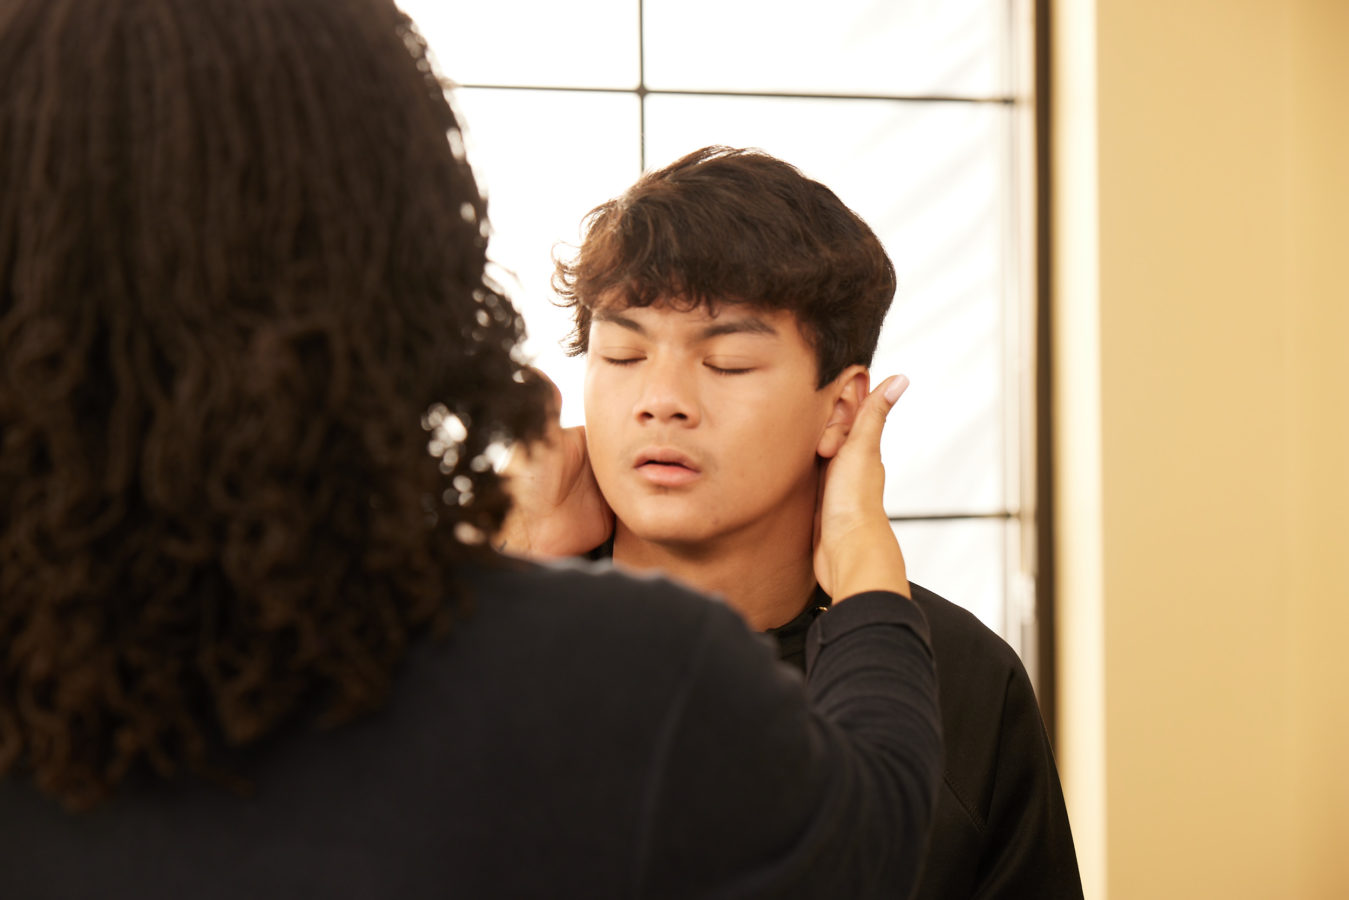 female physical therapist examining teenage boys neck